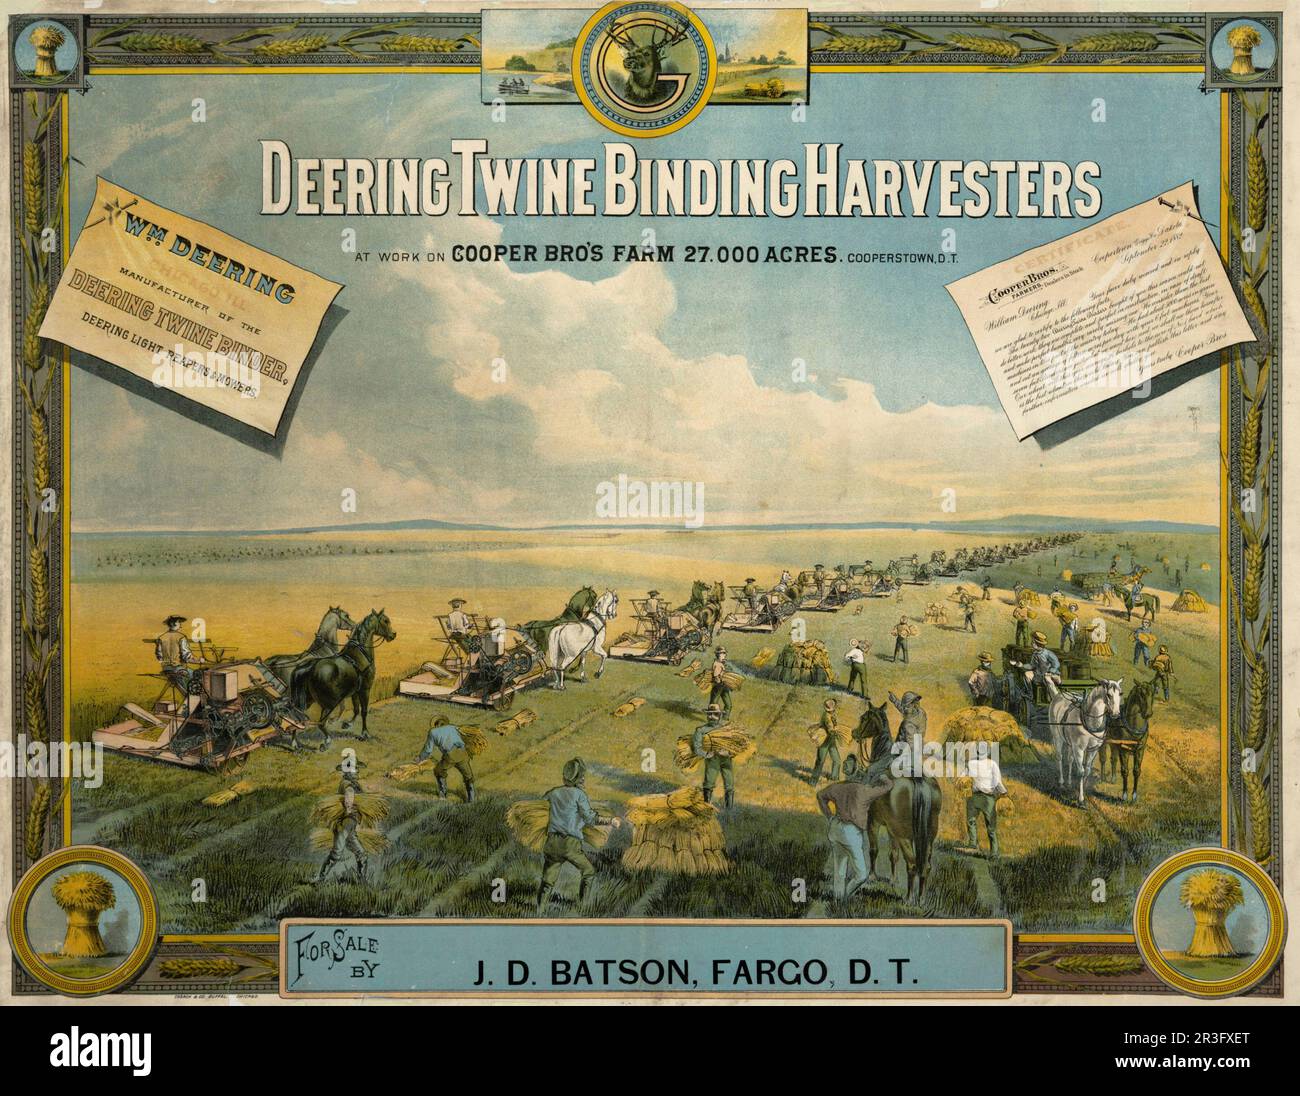 Vintage-Werbung für Erntemaschinen von Deering. Stockfoto